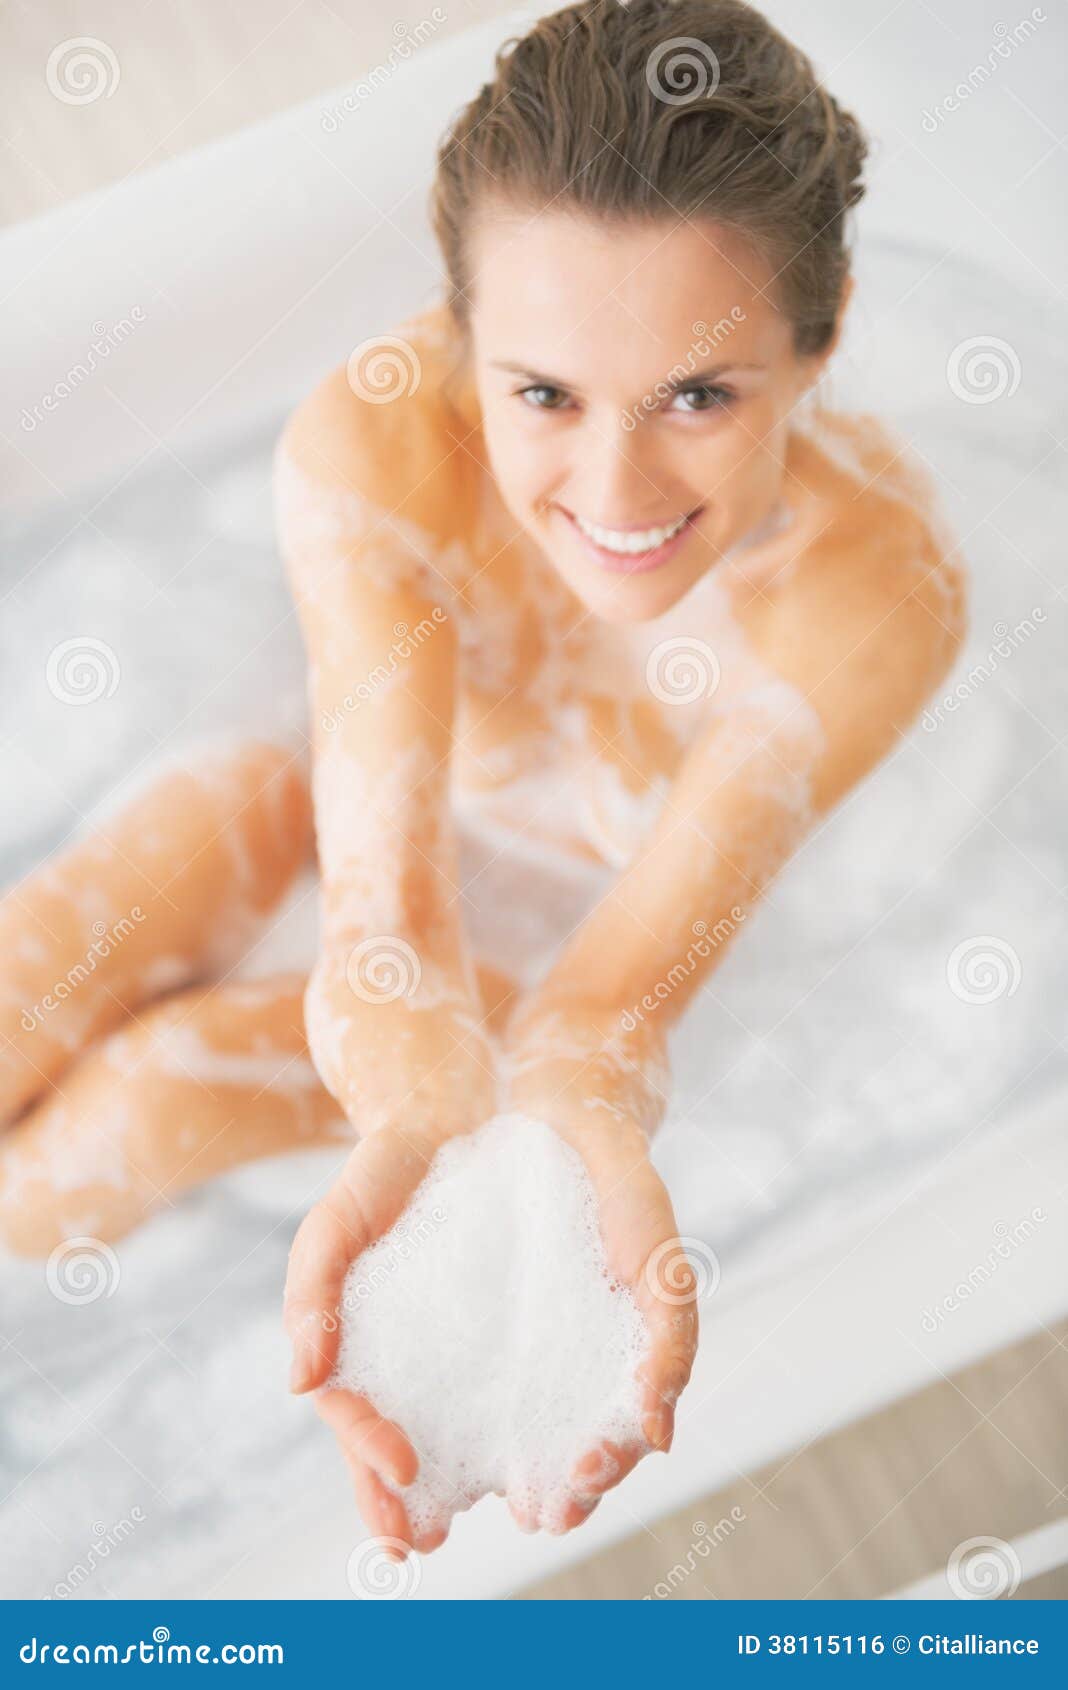 эротика голых девочек в ванной фото 21